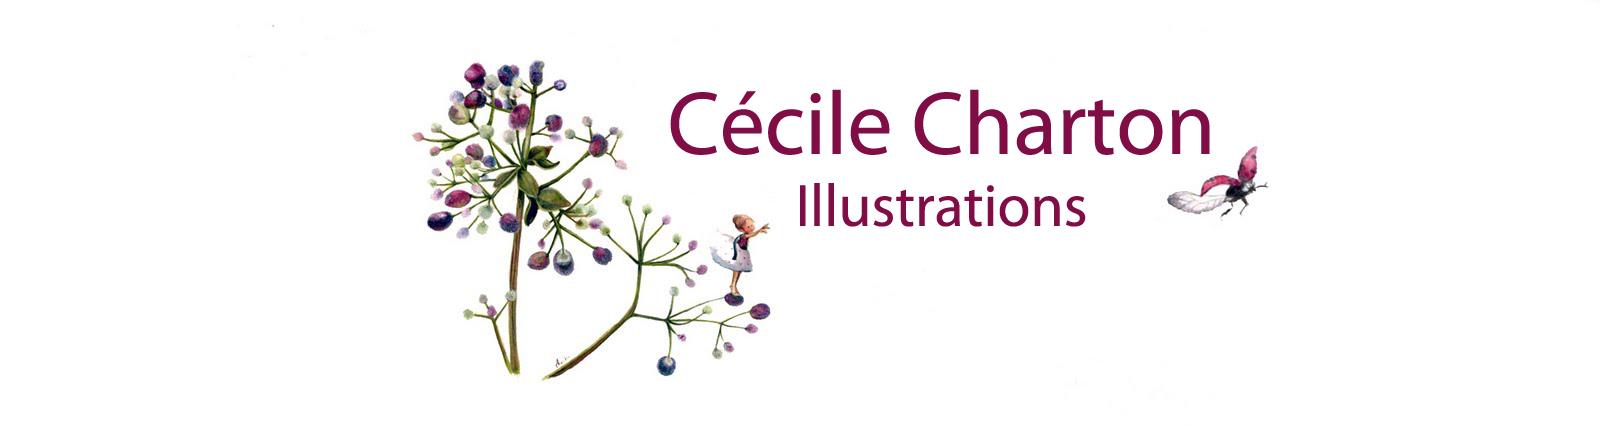 Cecile Charton ILLUSTRATIONS